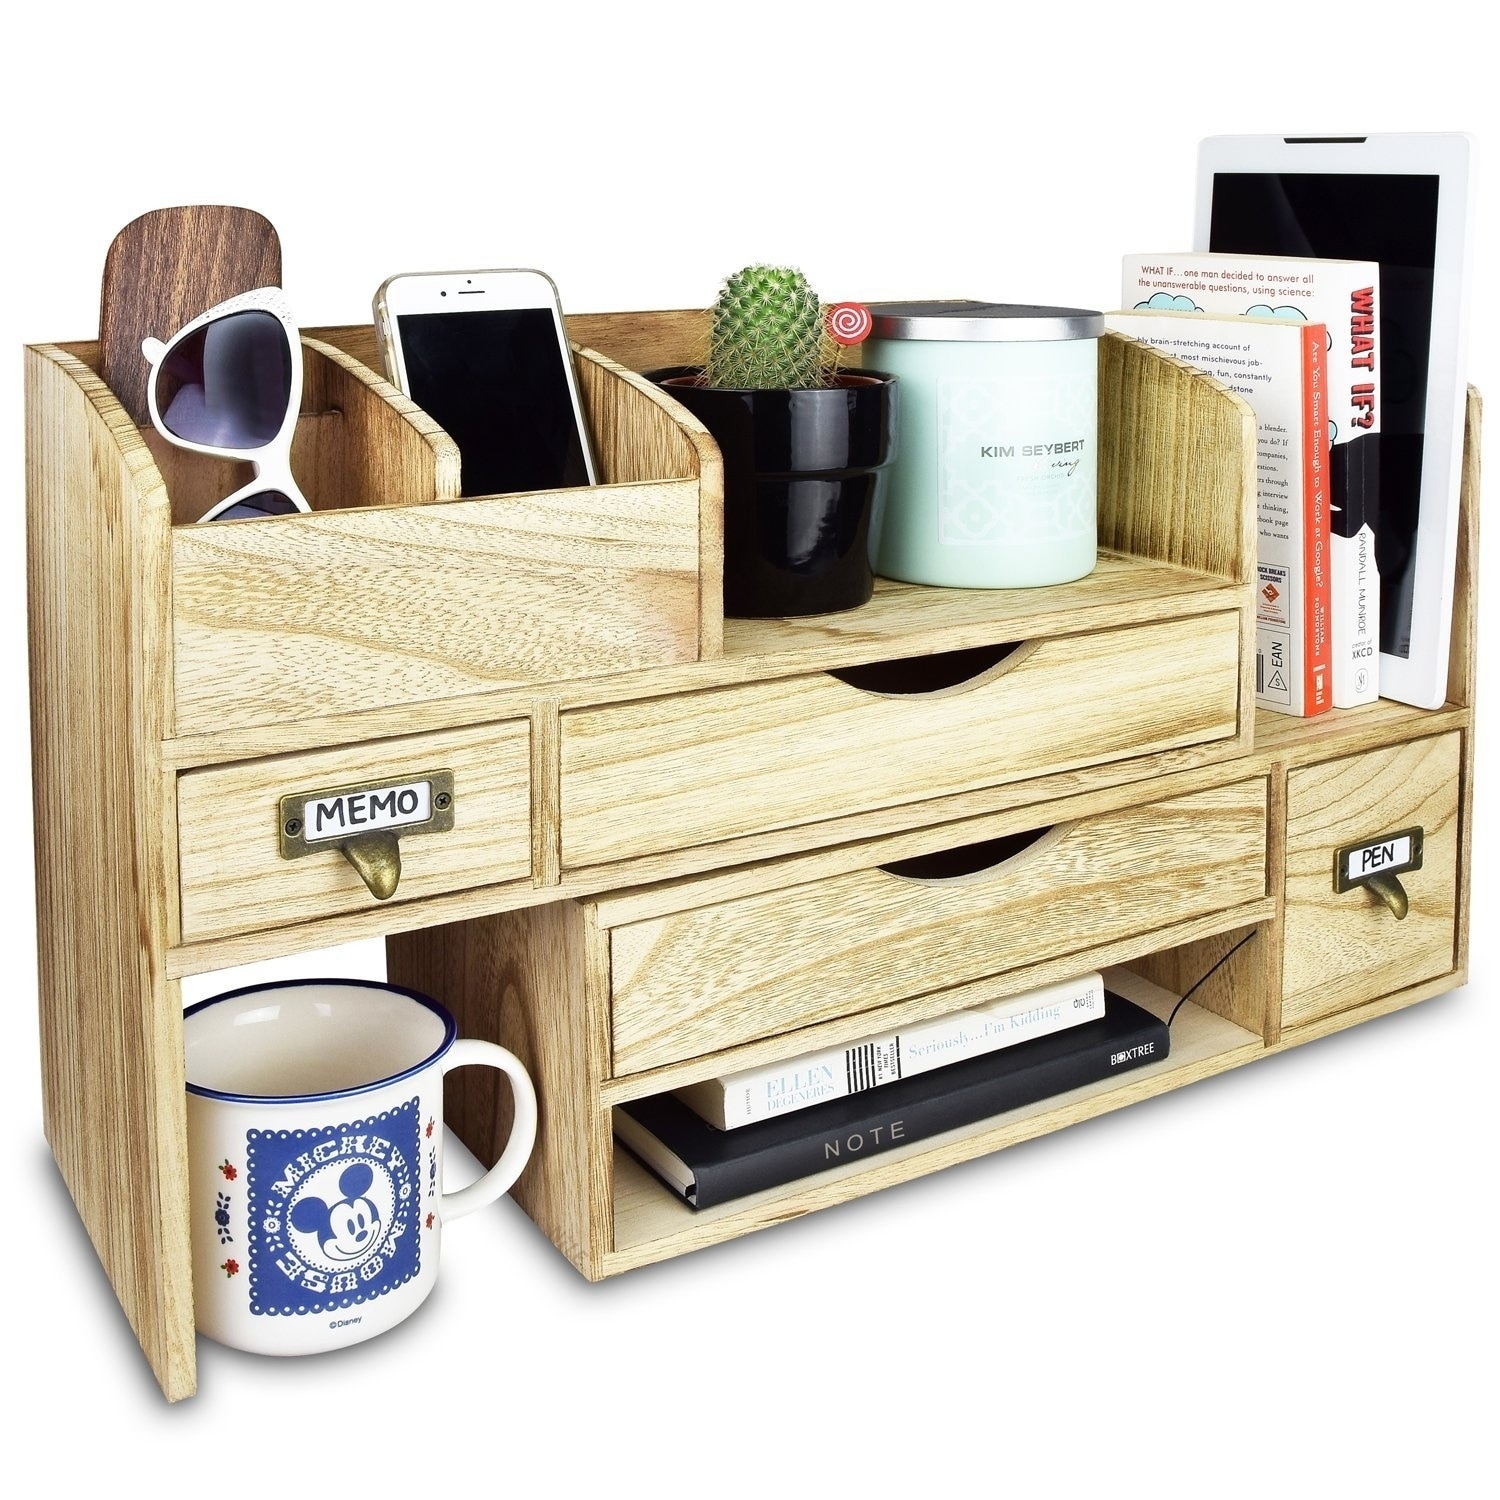 Ikee Design Adjustable Wooden Desktop Organizer Office Supplies Storage Shelf Rack 25996030 C7ec 4e6a A64b 823b4d57b91d 